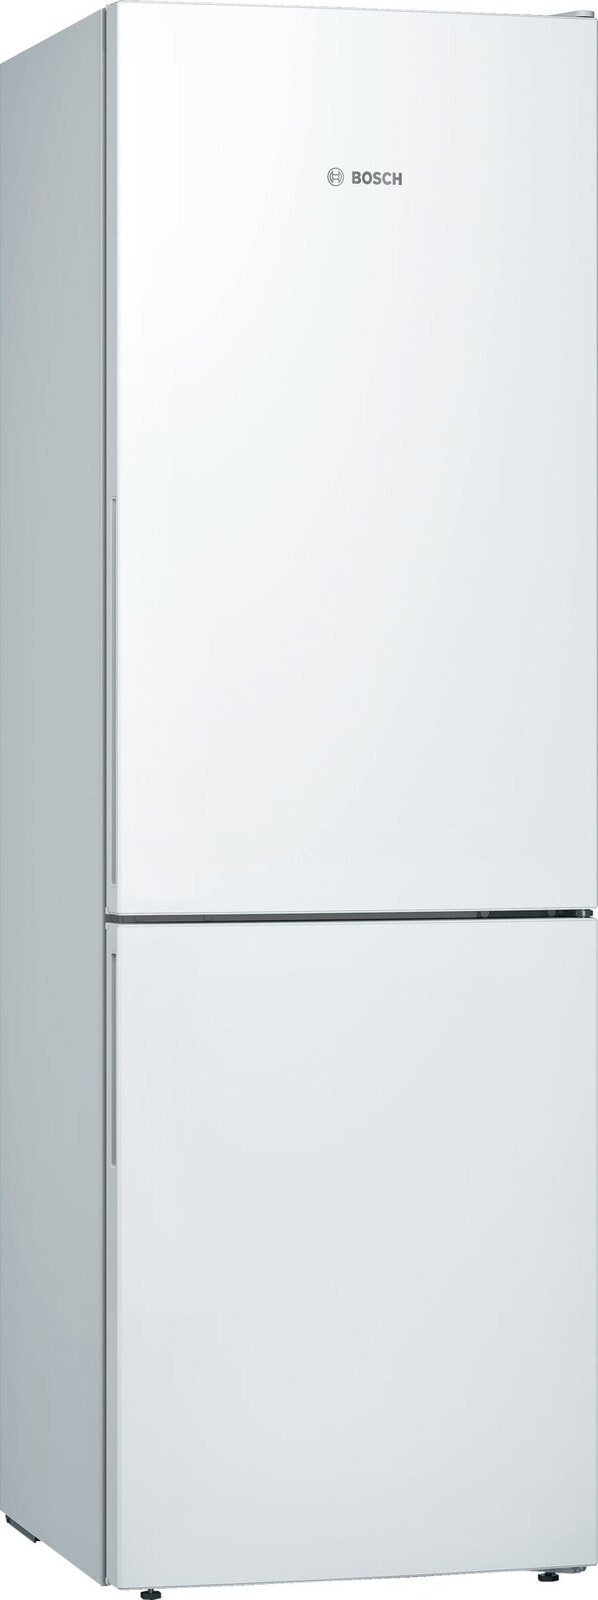 Bosch Serie 6 KGE36AWCA холодильник с морозильной камерой Отдельно стоящий Белый 302 L A+++